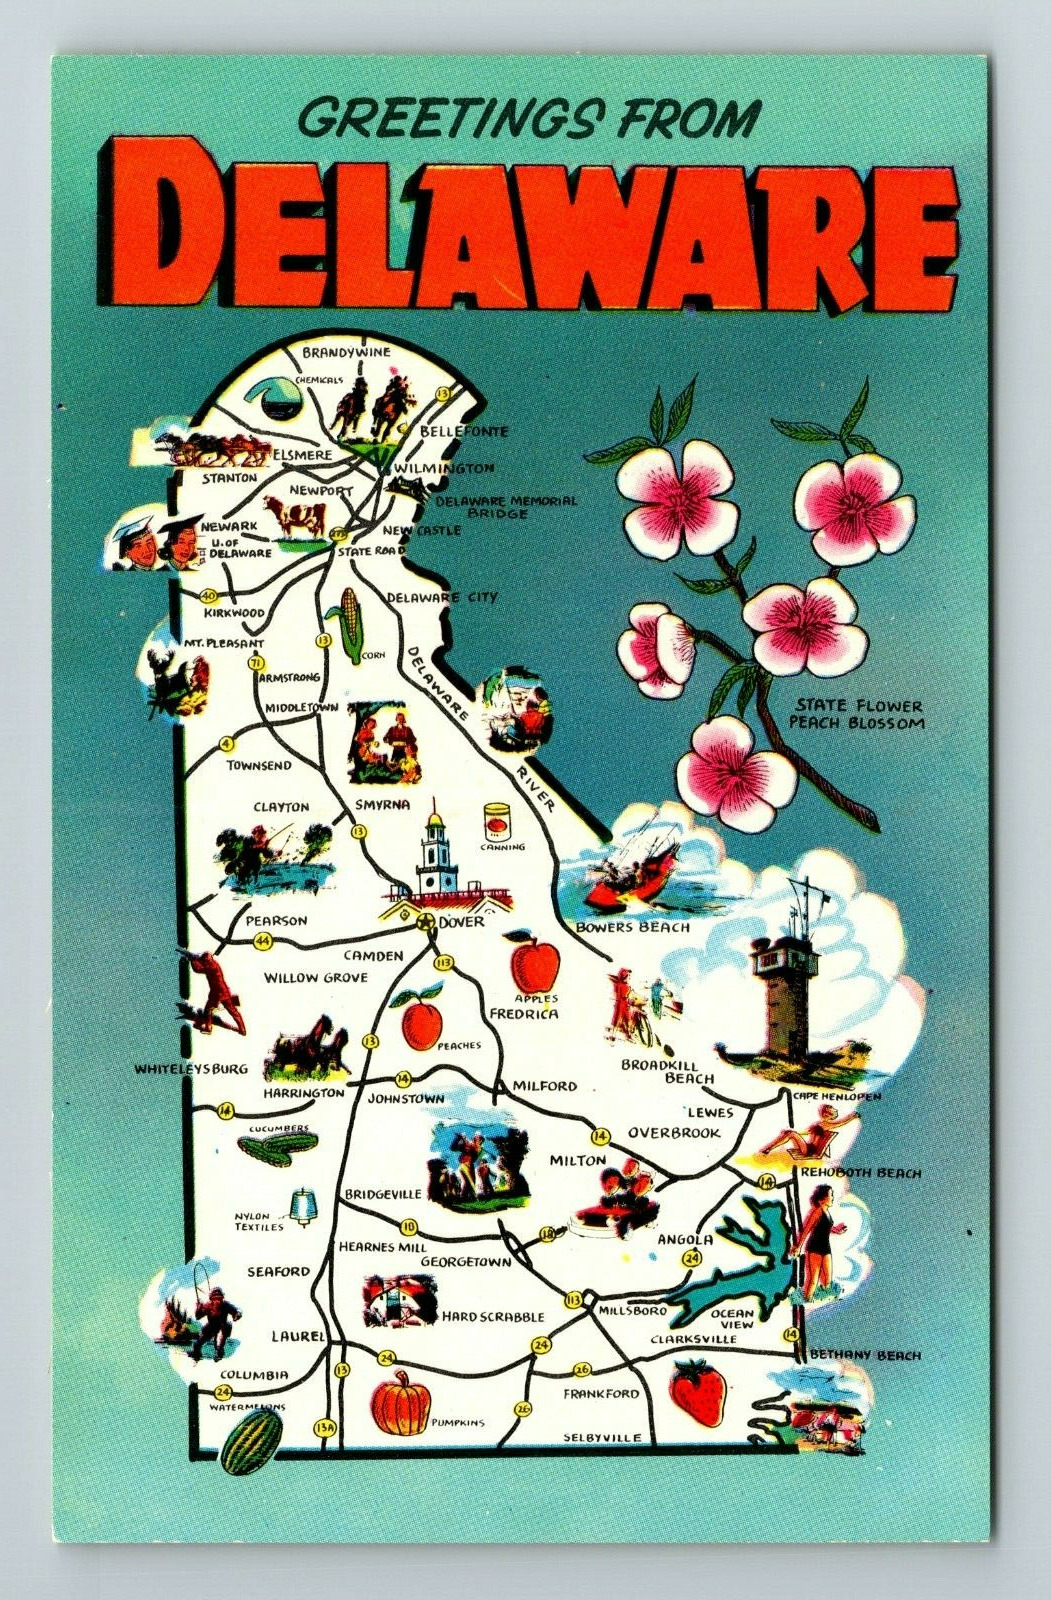 DE-Delaware, General Greetings, Map View, State Flower, Vintage Postcard